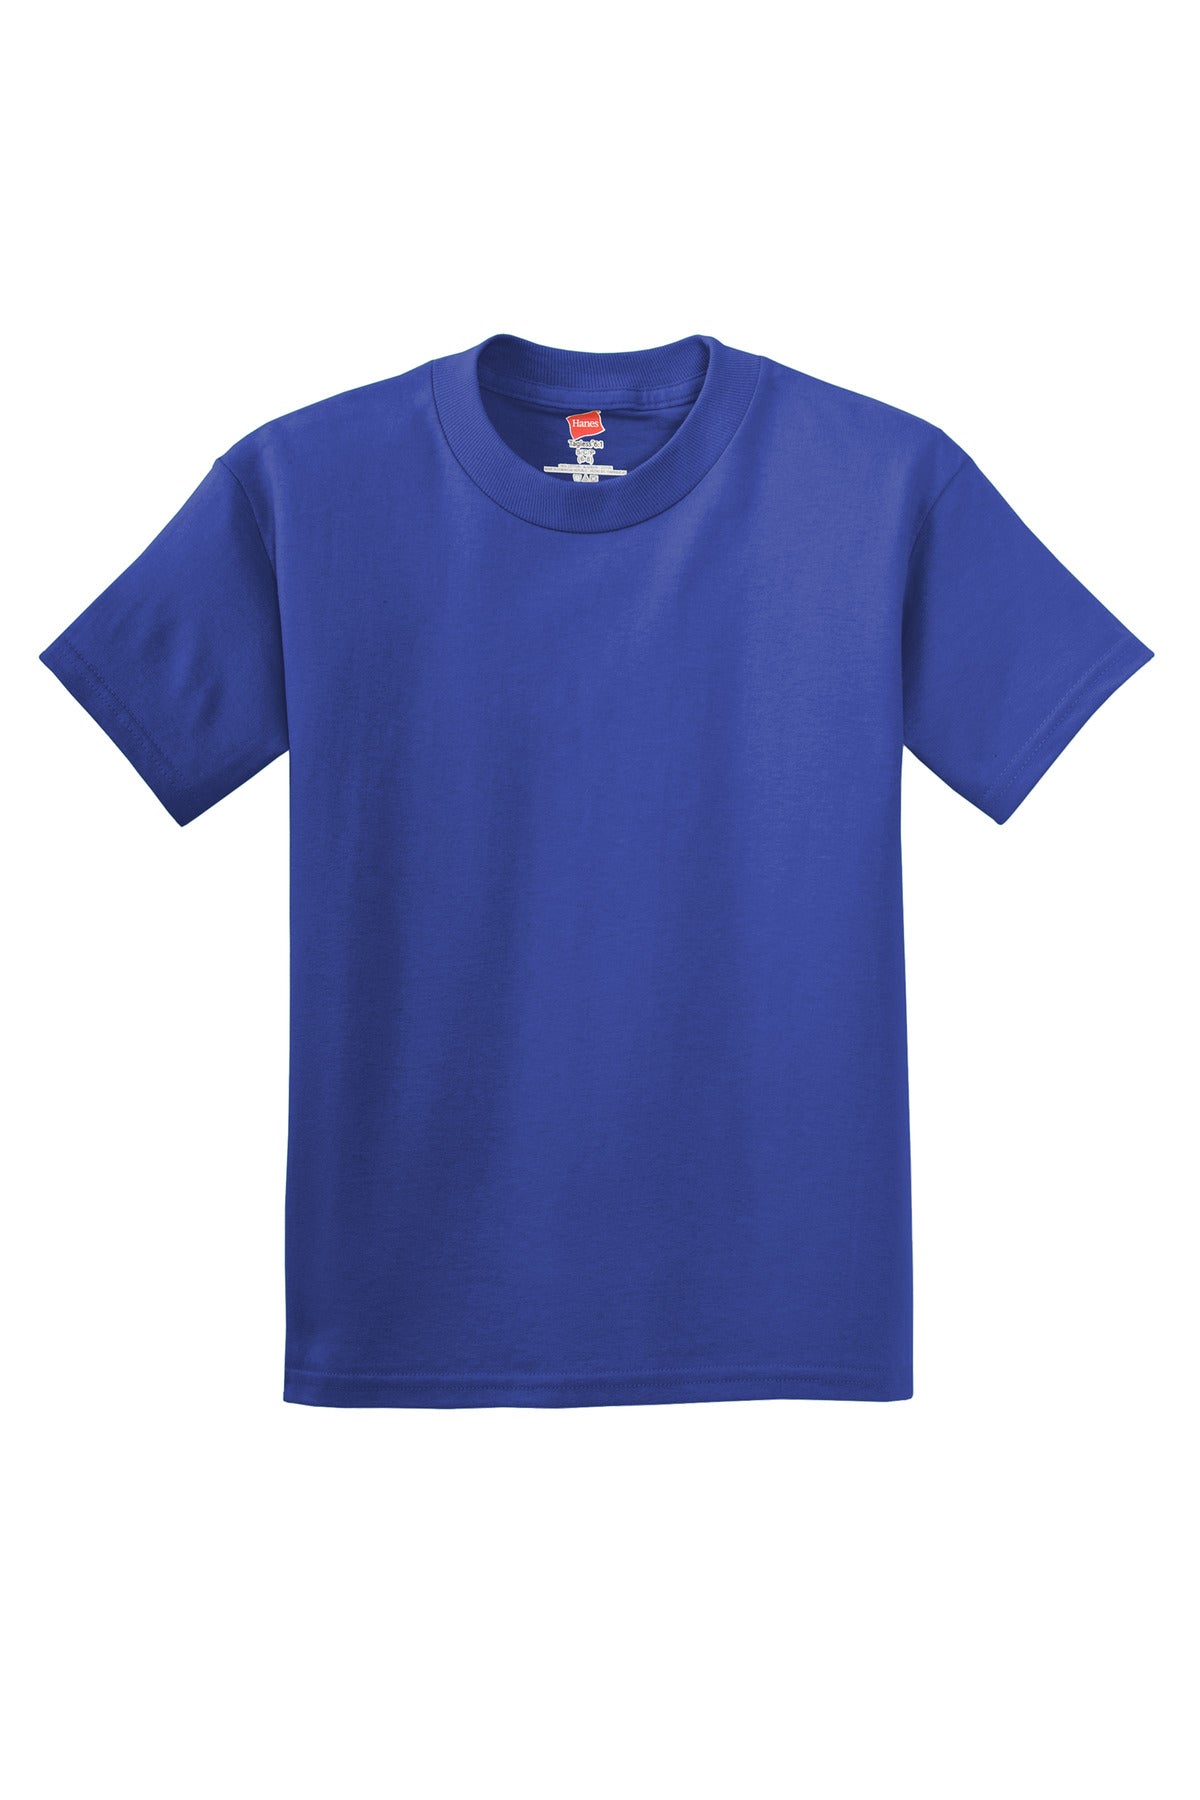 Photo of Hanes T-Shirts 5450  color  Deep Royal